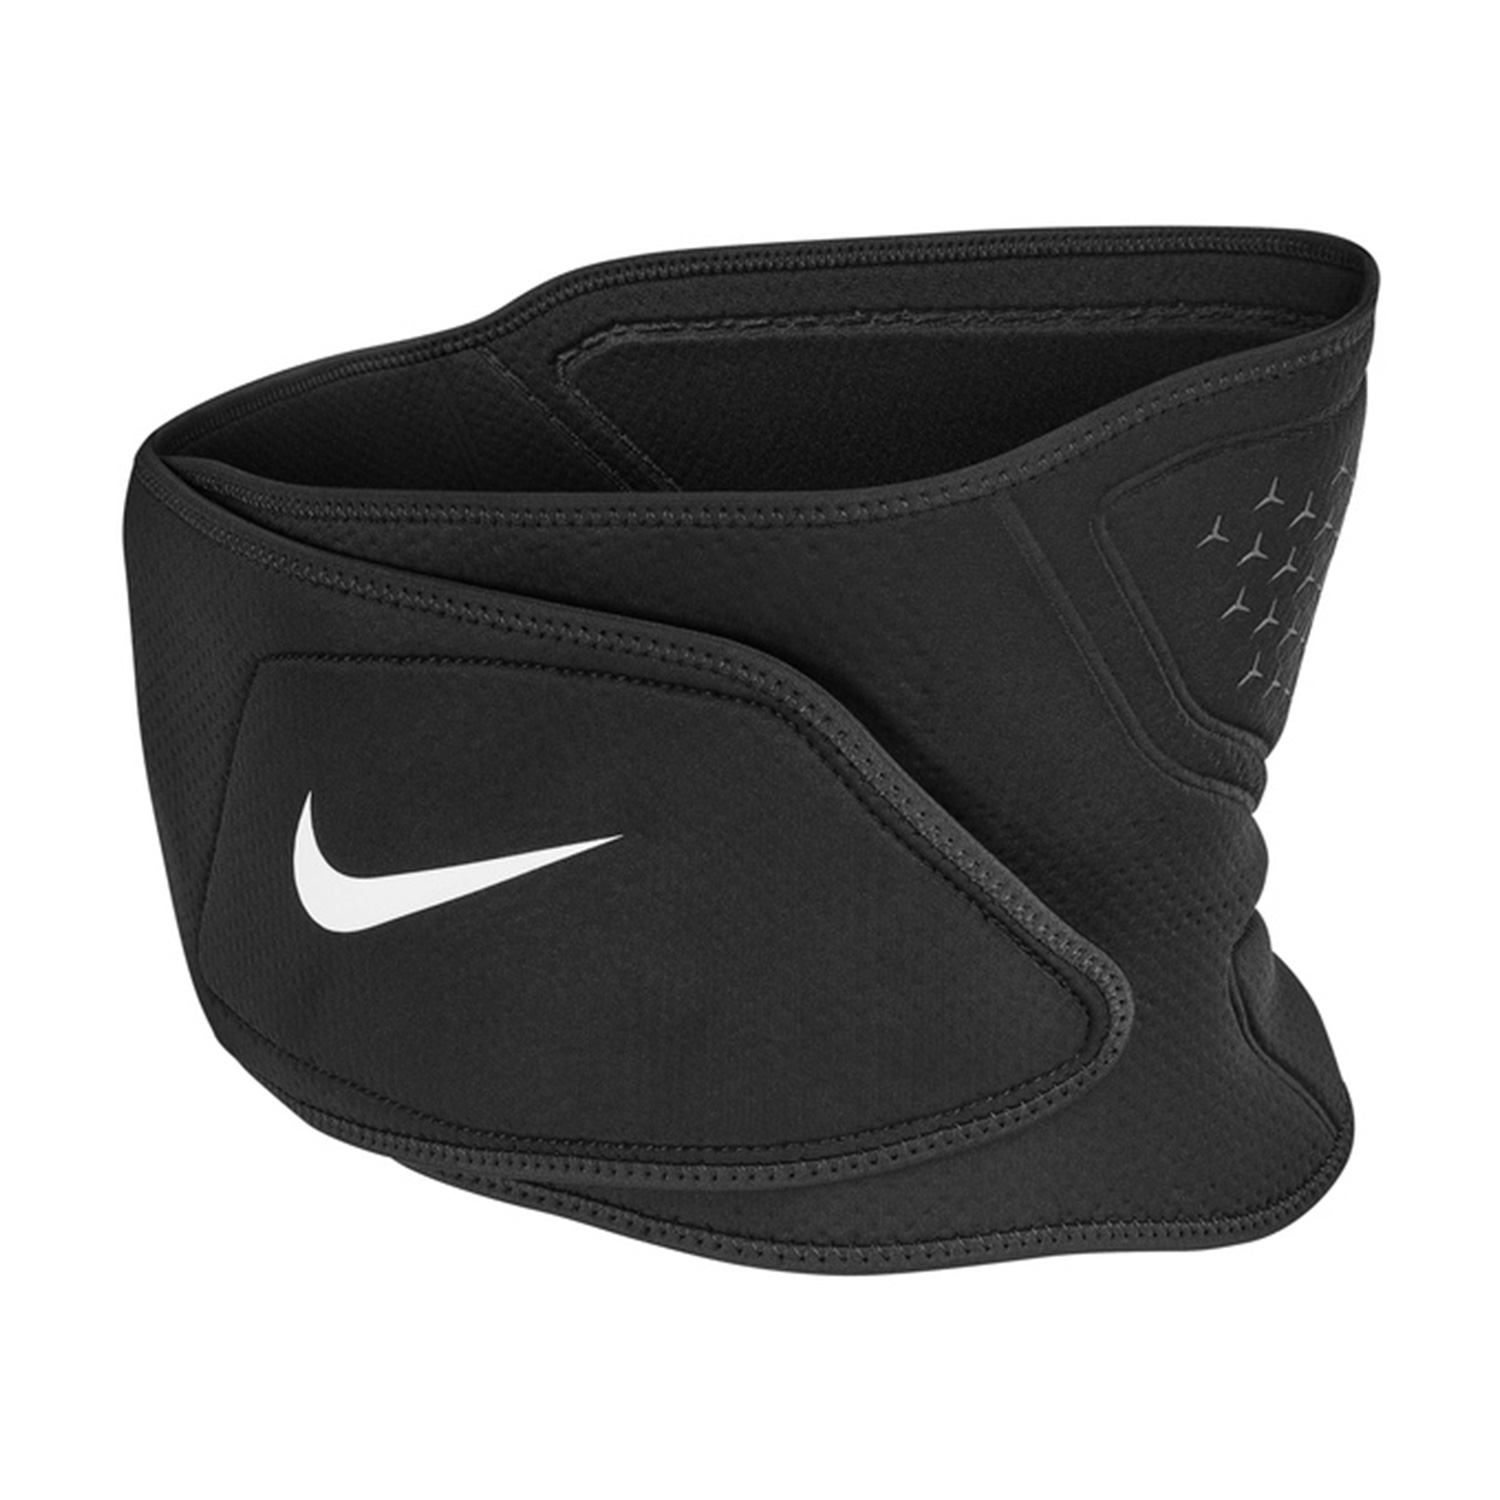 Nike Pro 3.0 Waist Wrap - Black/White